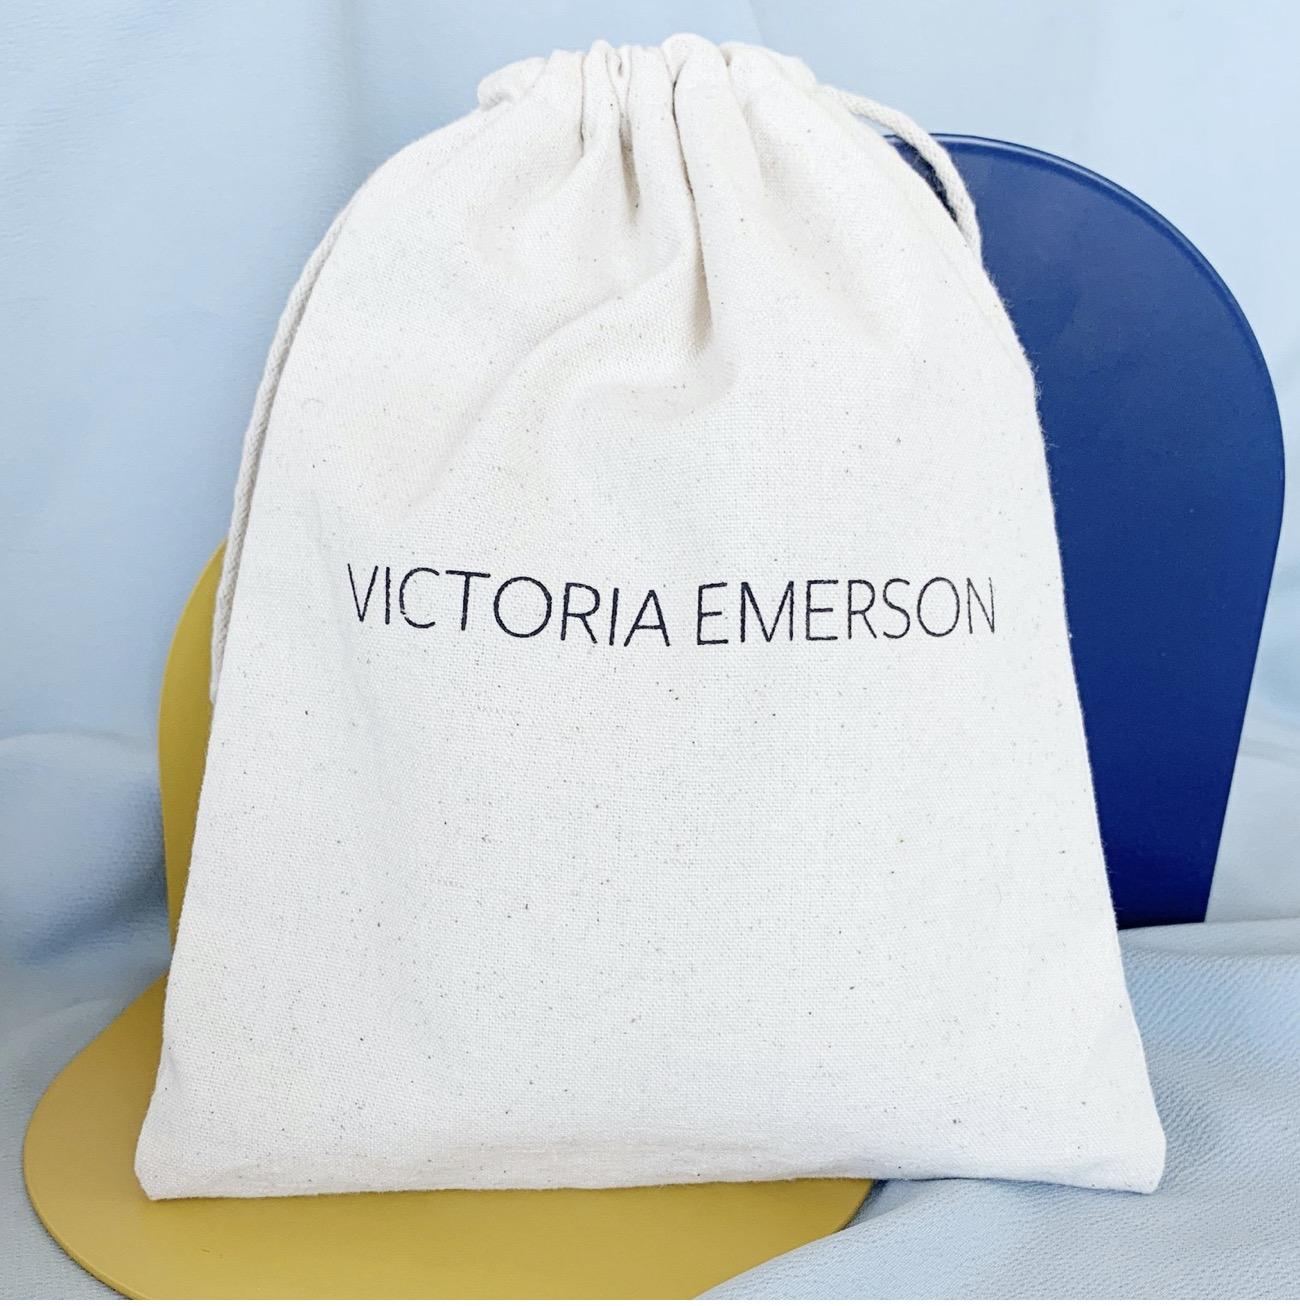 Victoria Emerson Surprise Bag – 7th Edition!